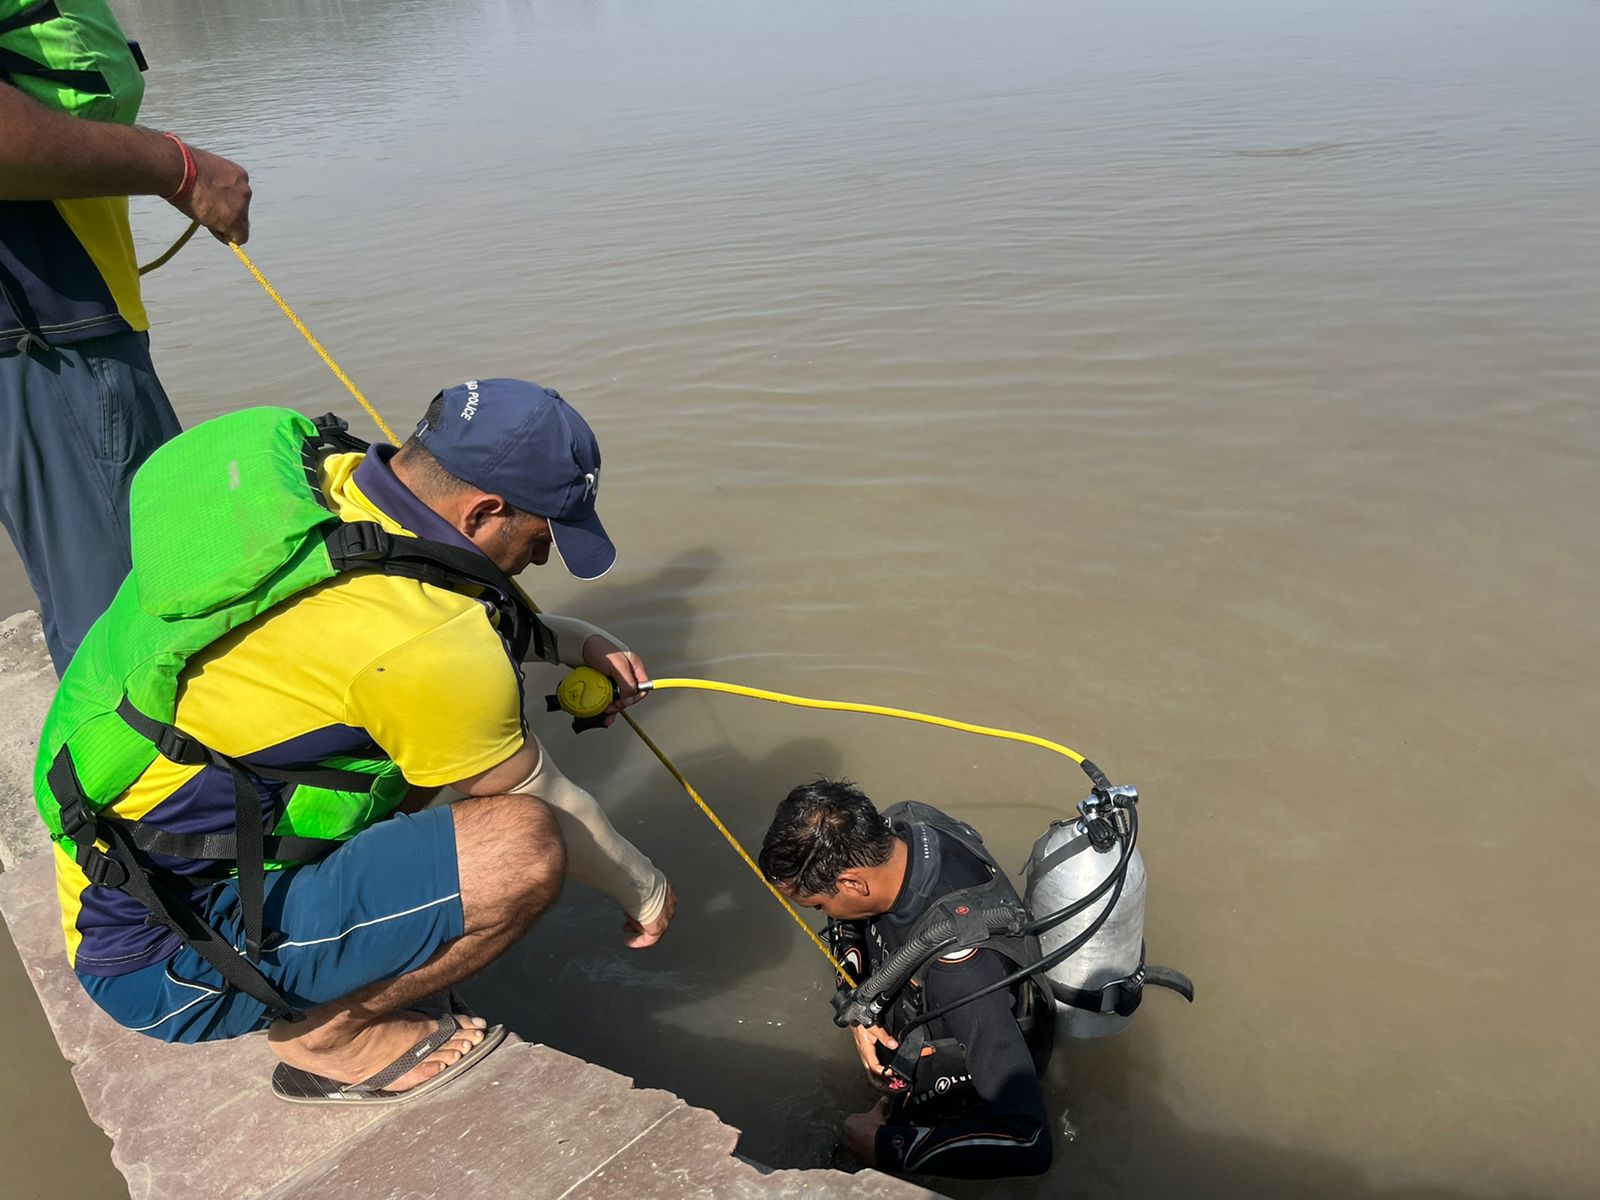 हरिद्वार चण्डी पुल के पास गंगा नदी में डूबा स्थानीय निवासी विमल,2 दिन से था लापता ,  SDRF ने किया शव बरामद।